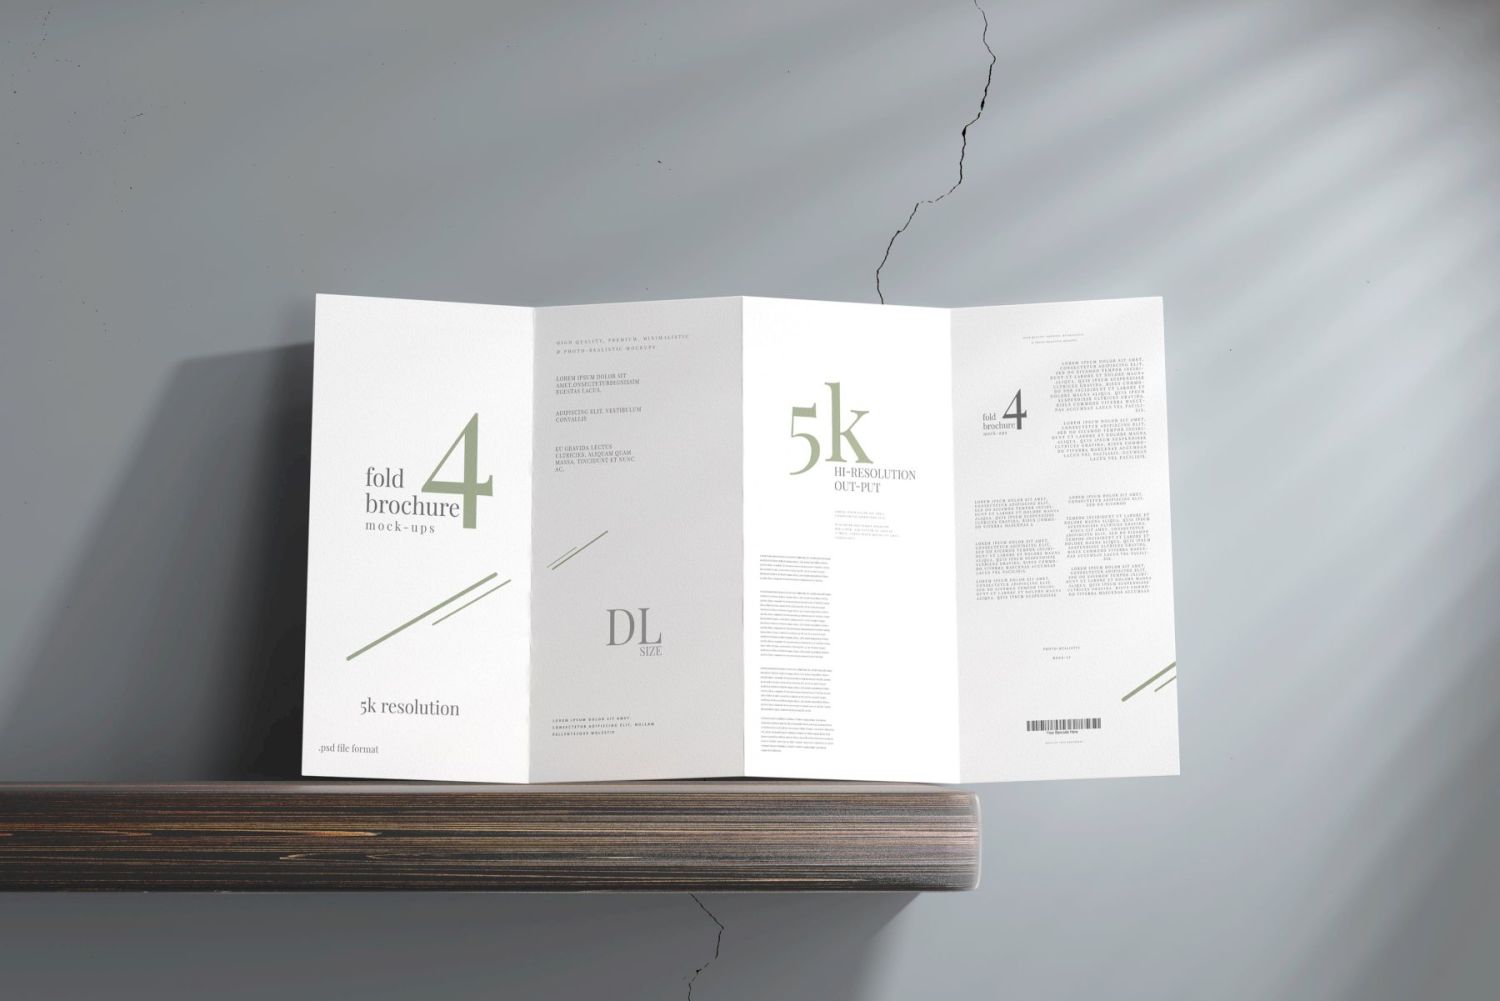 DL尺寸四折宣传册样机 Four Fold DL Brochure Mockups插图1